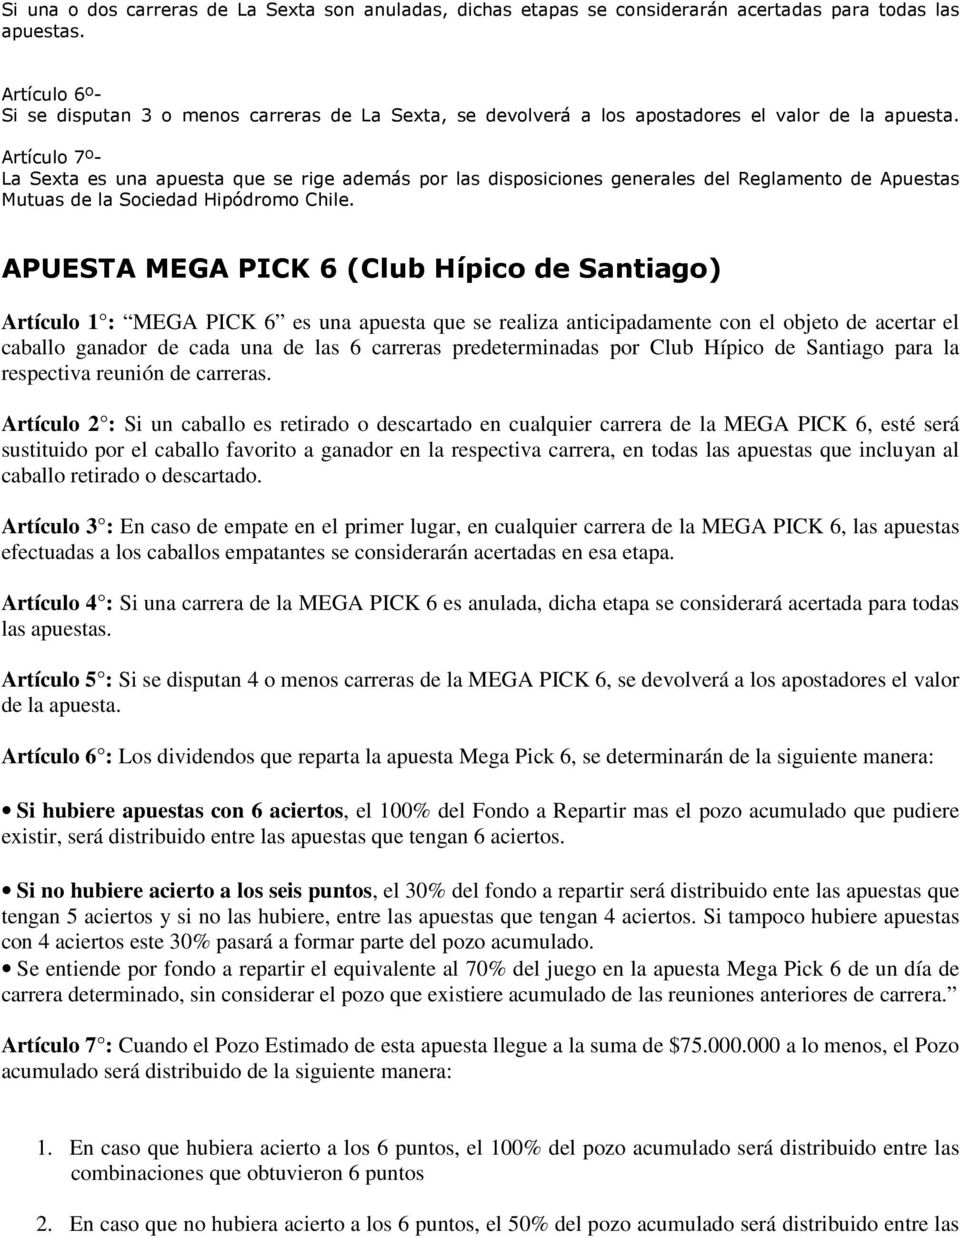 Artículo 7º- La Sexta es una apuesta que se rige además por las disposiciones generales del Reglamento de Apuestas Mutuas de la Sociedad Hipódromo Chile.